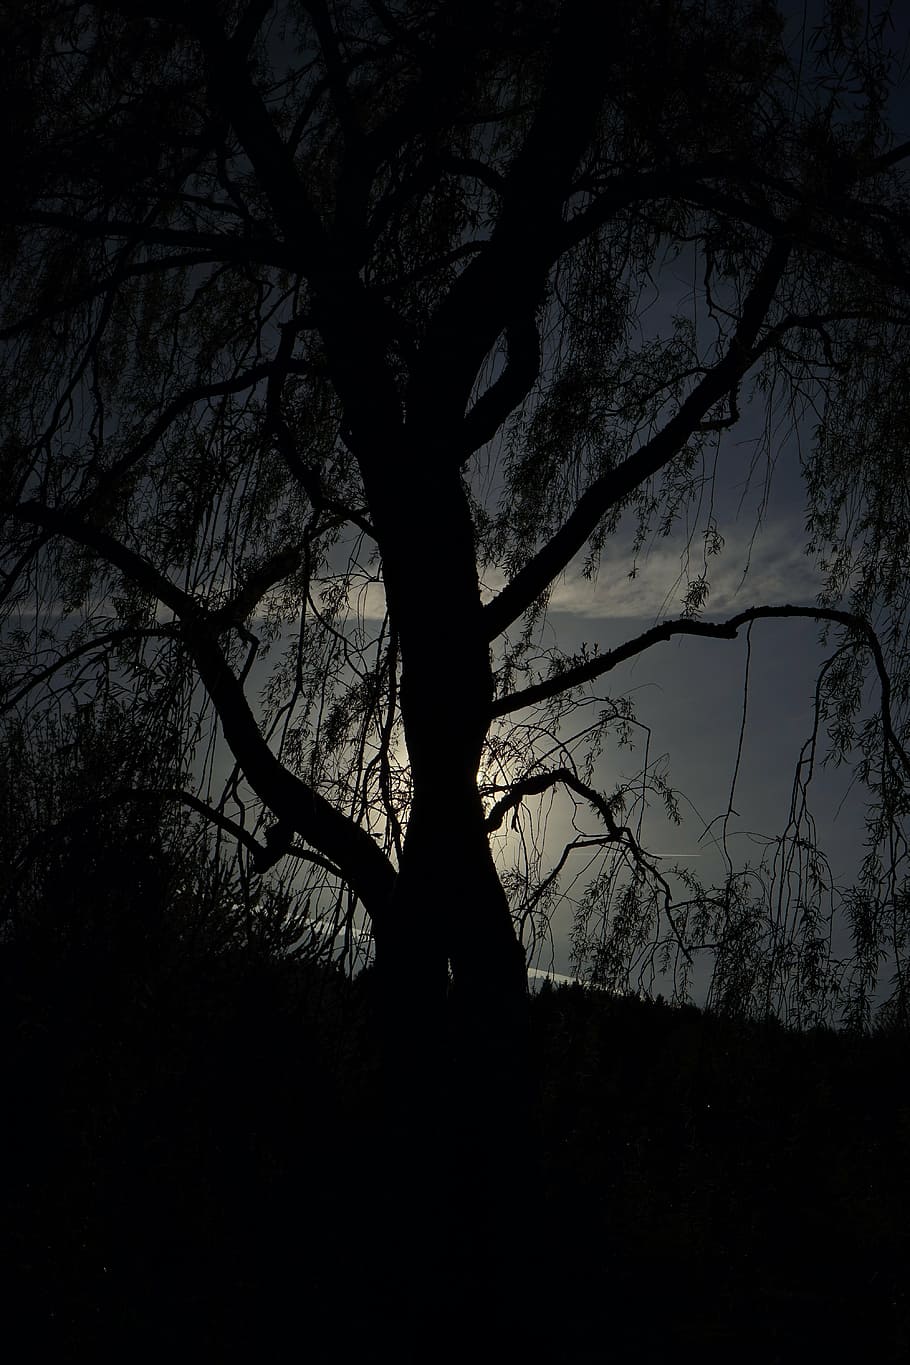 pasture, tree, back light, aesthetic, dark, threatening, night, blackness, darkness, moonlight